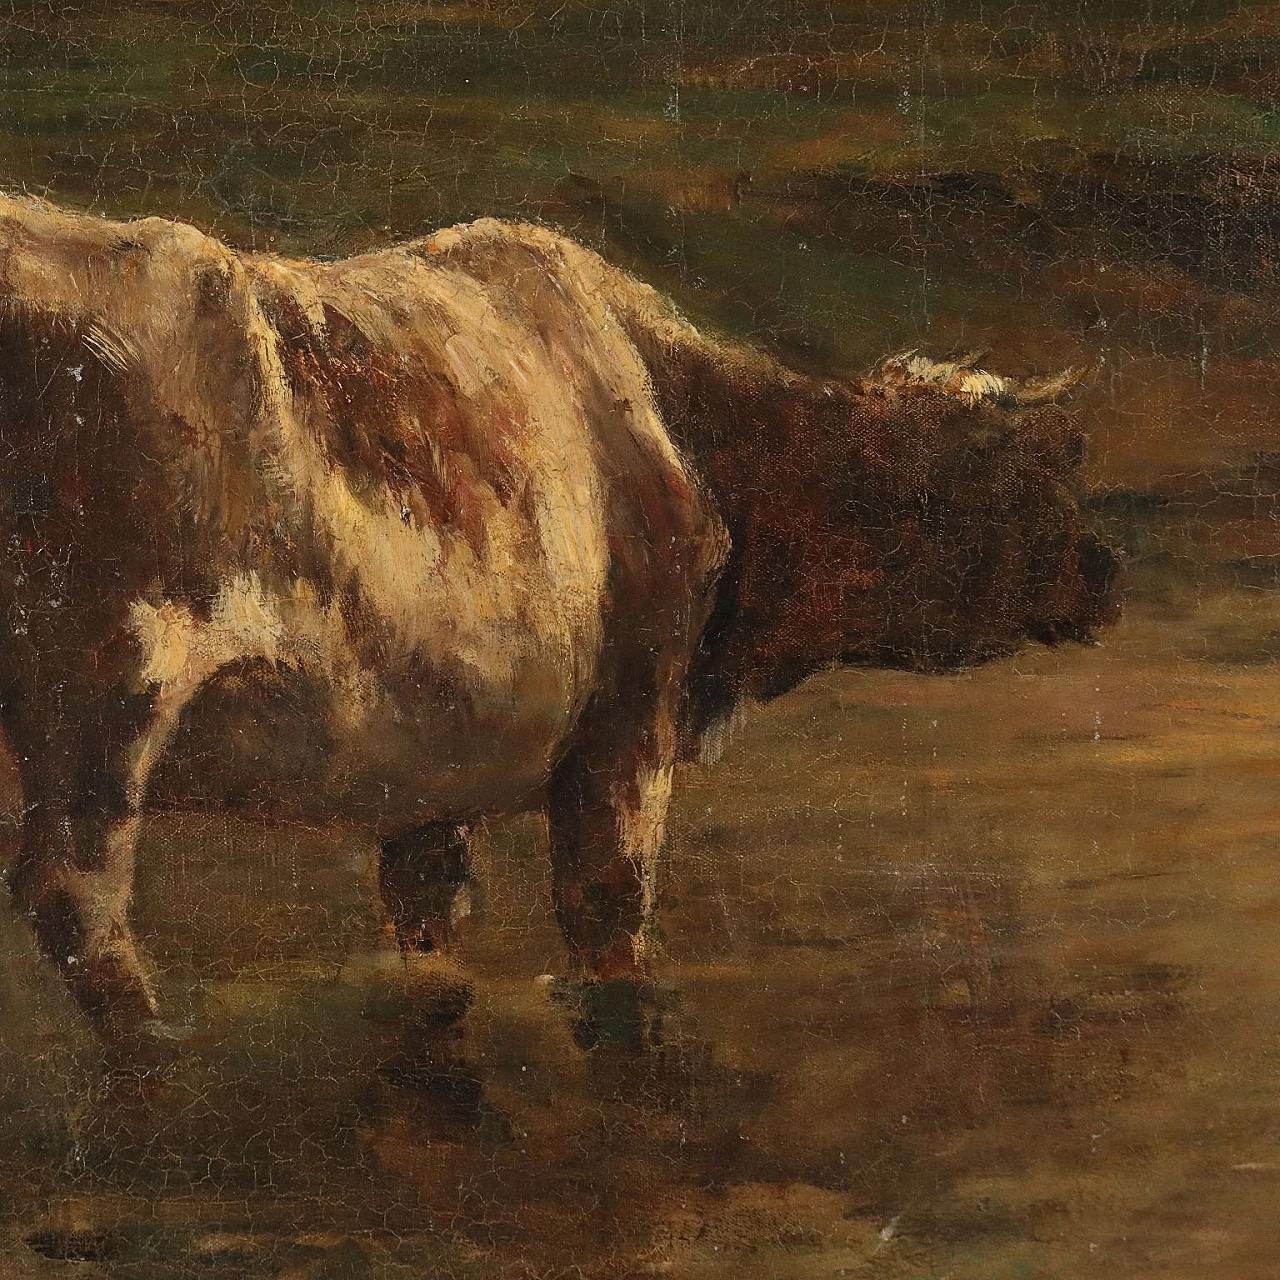 G. Pier Dieterle, Scorcio di campagna con mucche, olio su tela 4